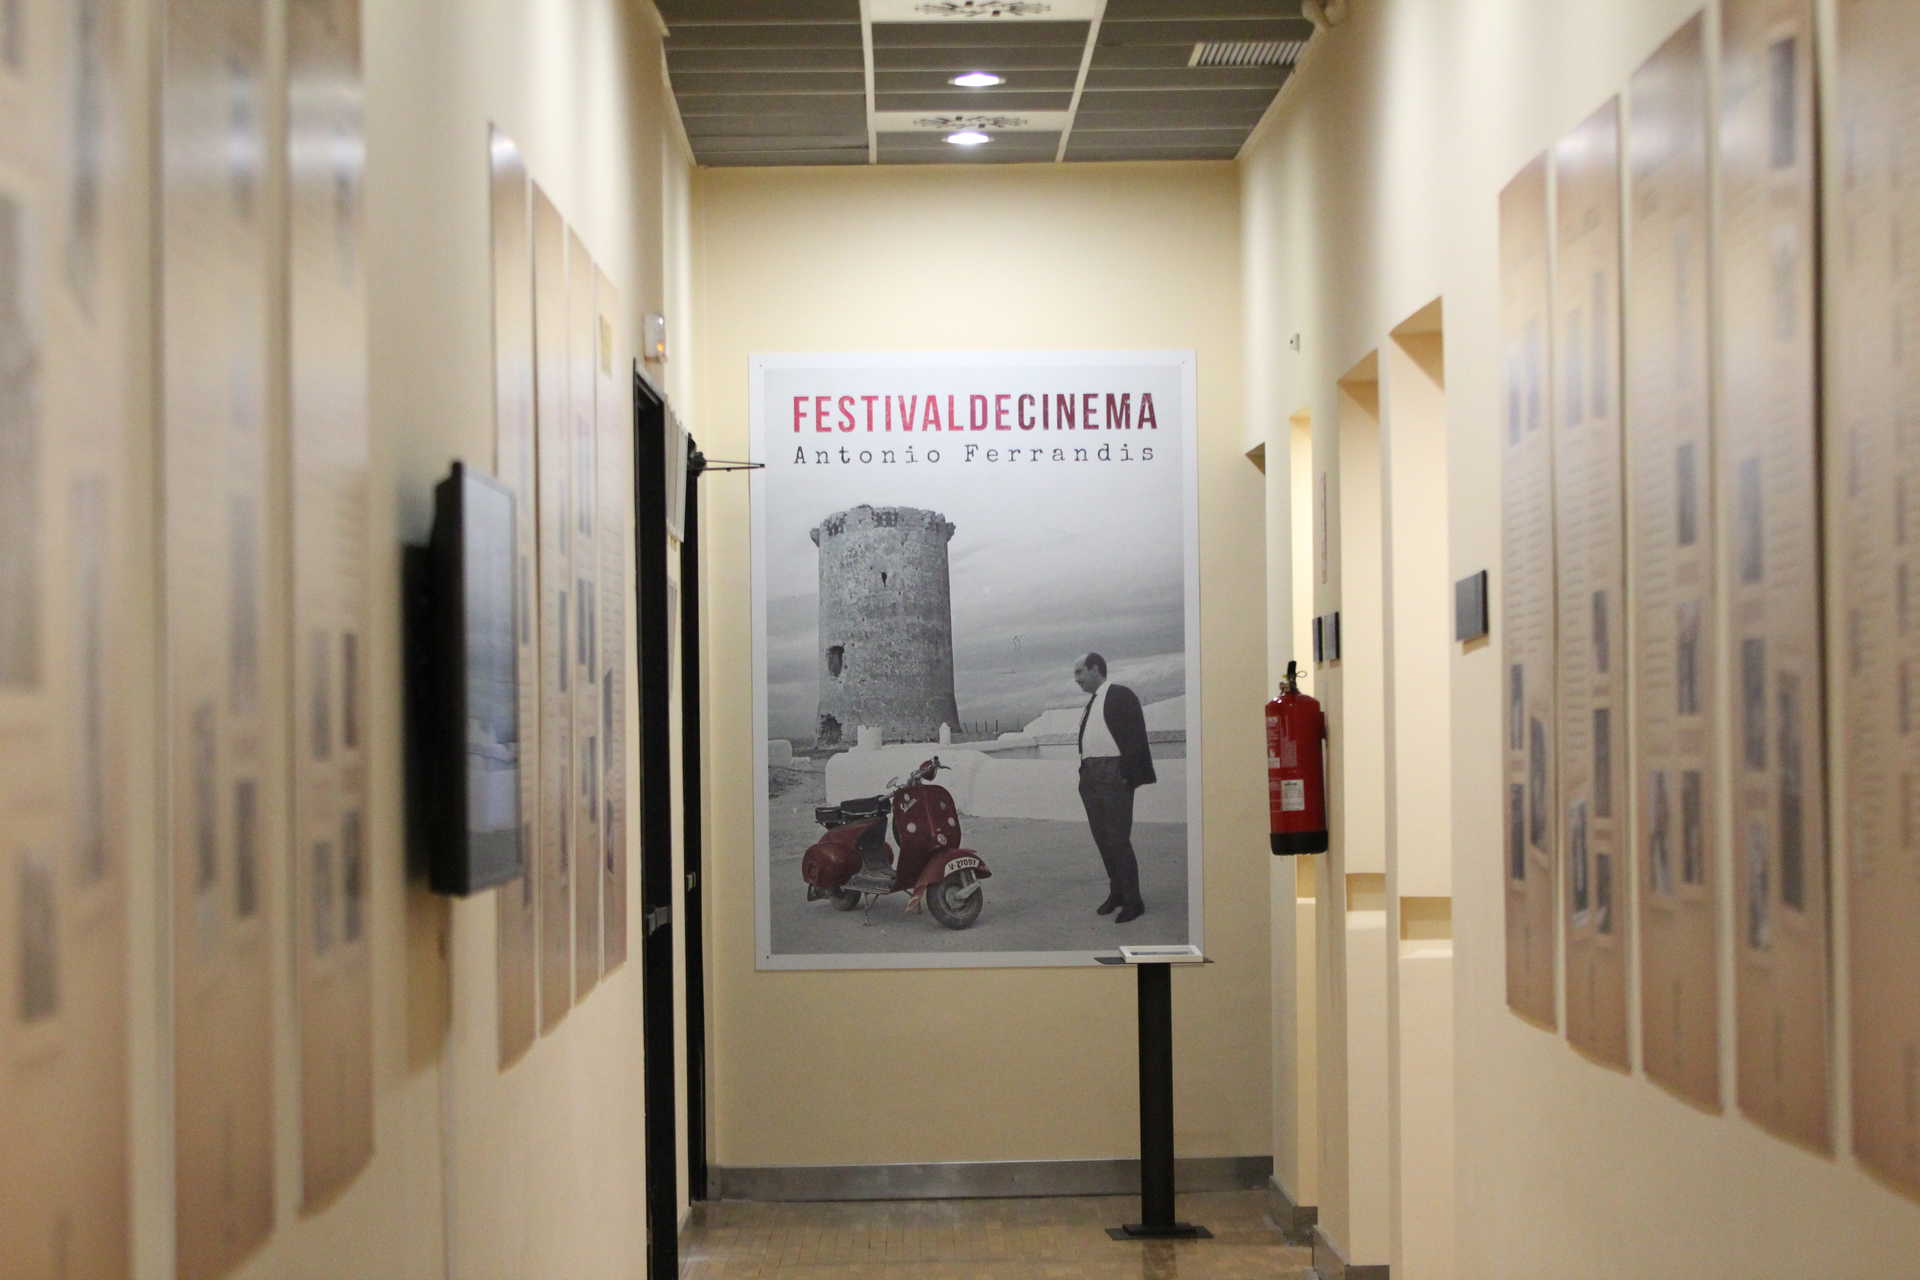 Antonio Ferrandis Film Festival